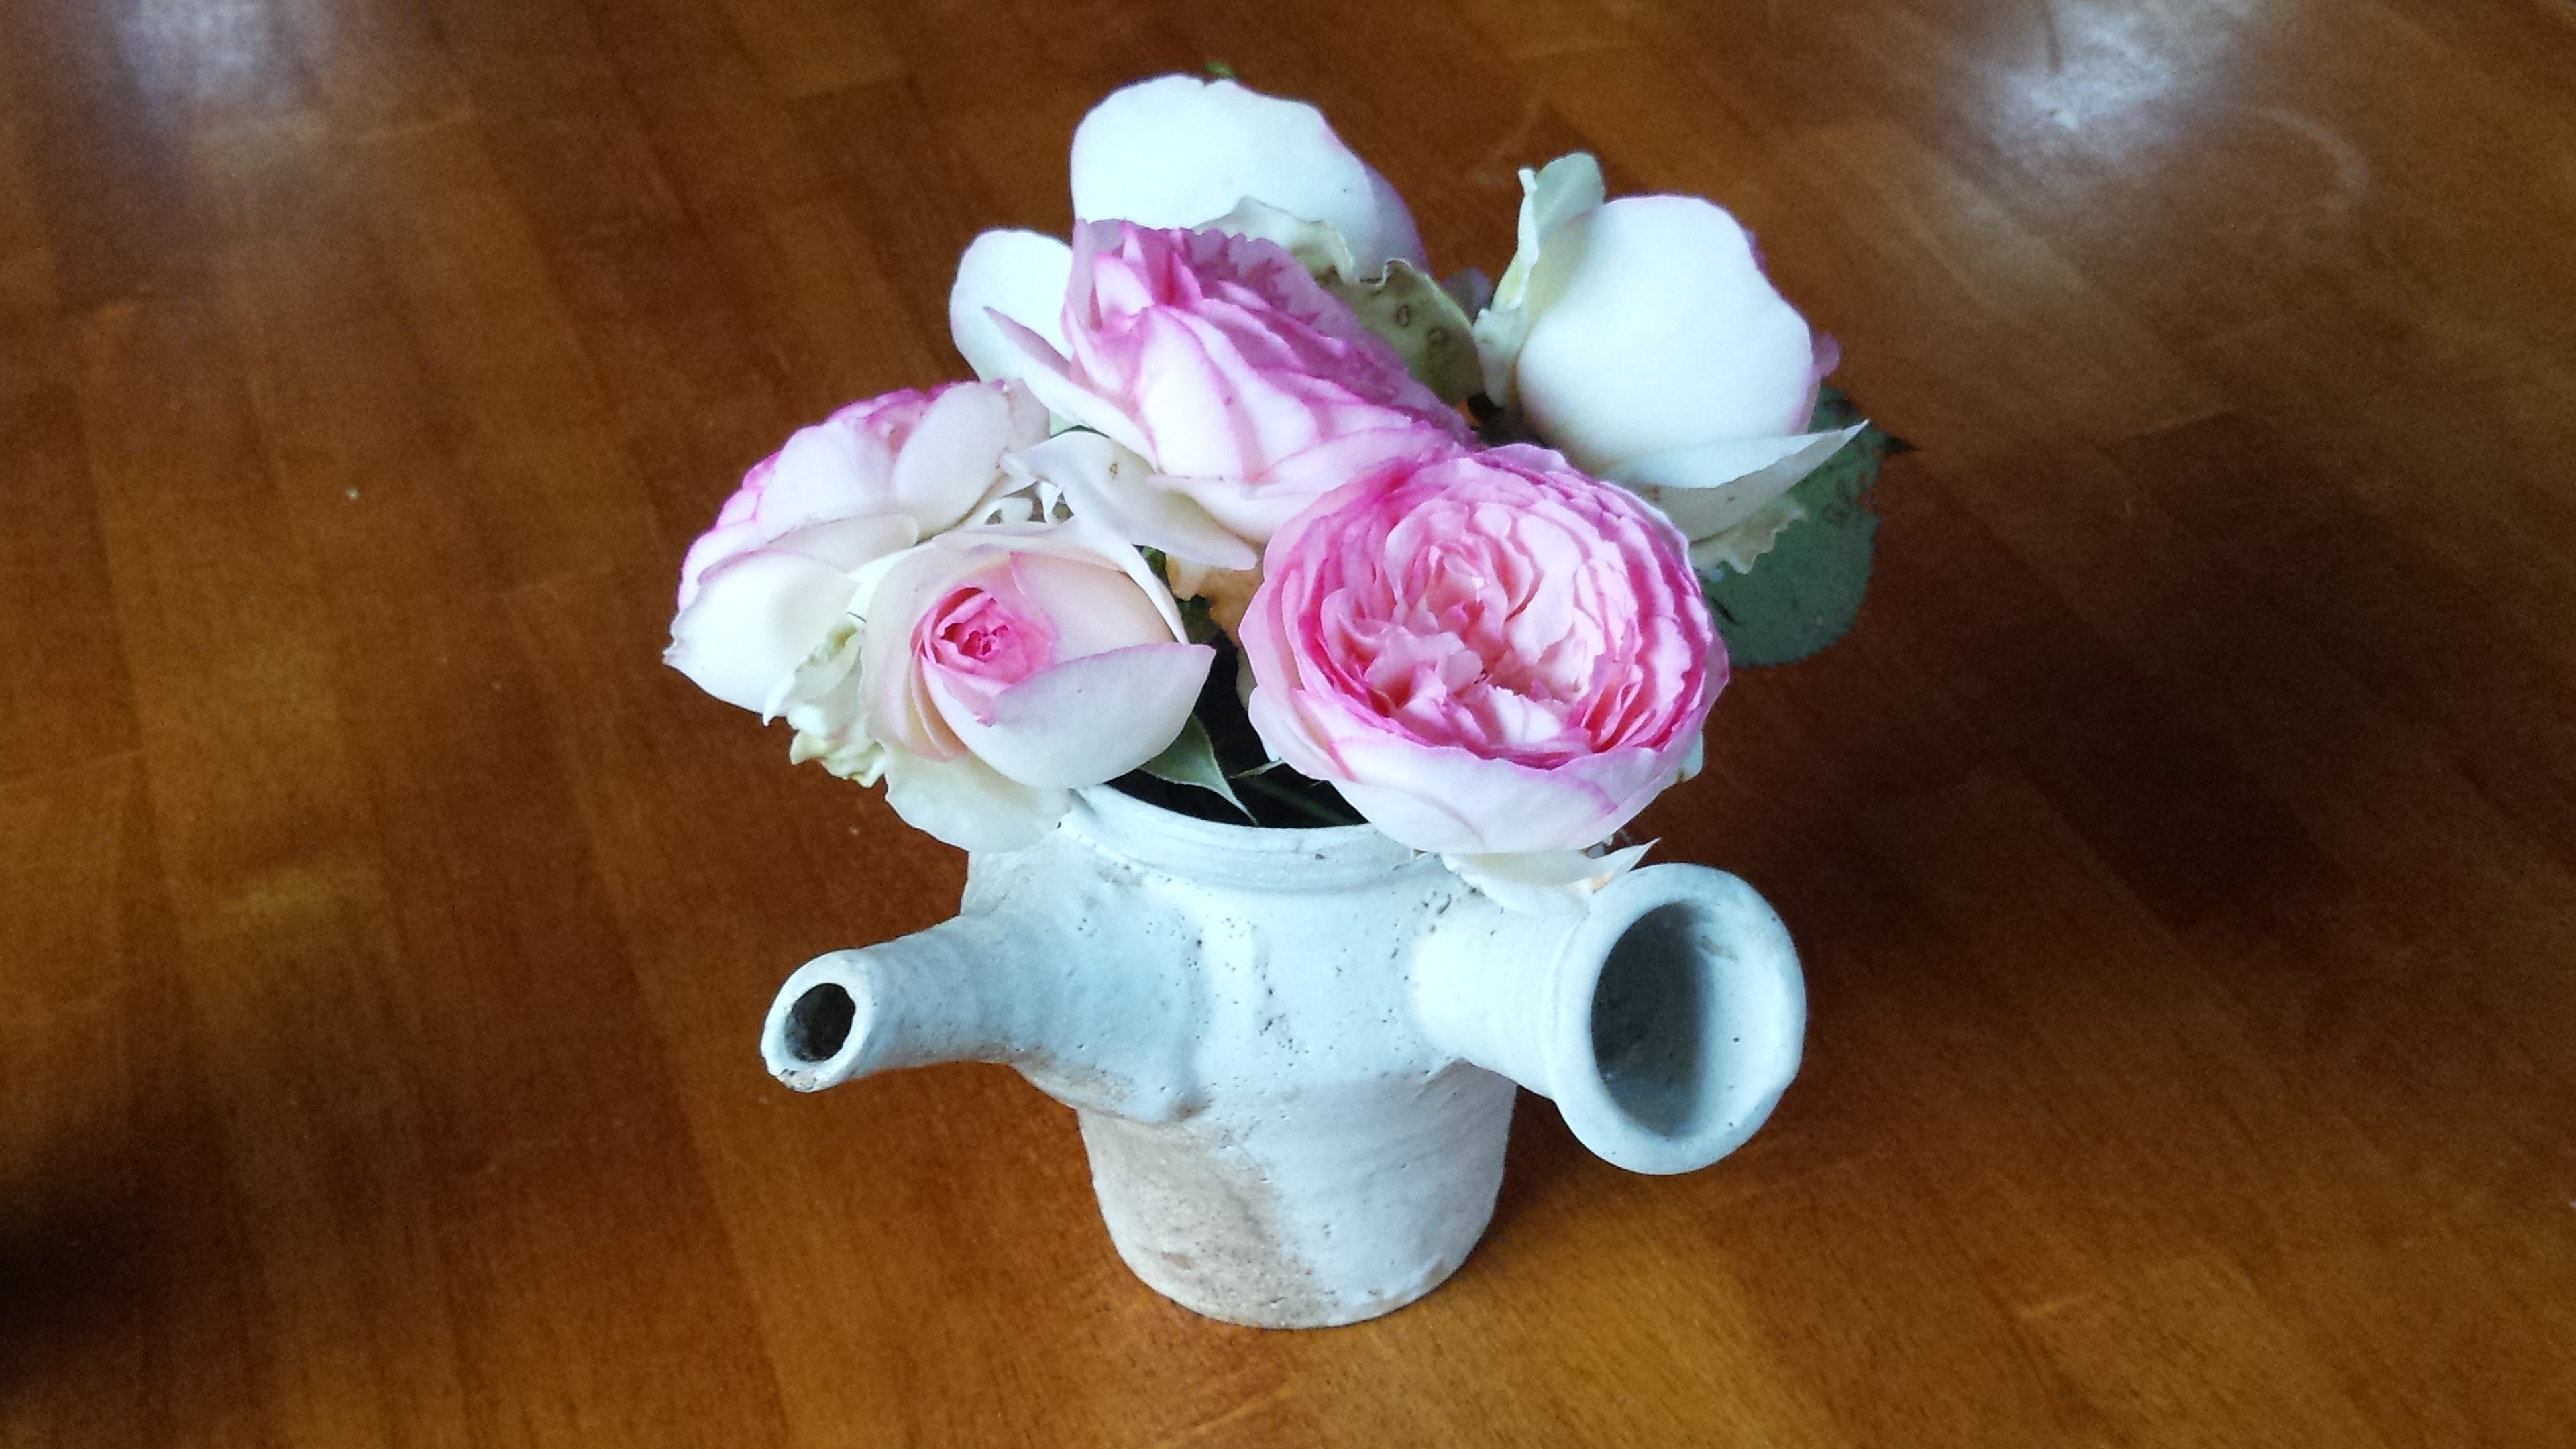 壊れた急須に家で咲いたバラを入れてみた。